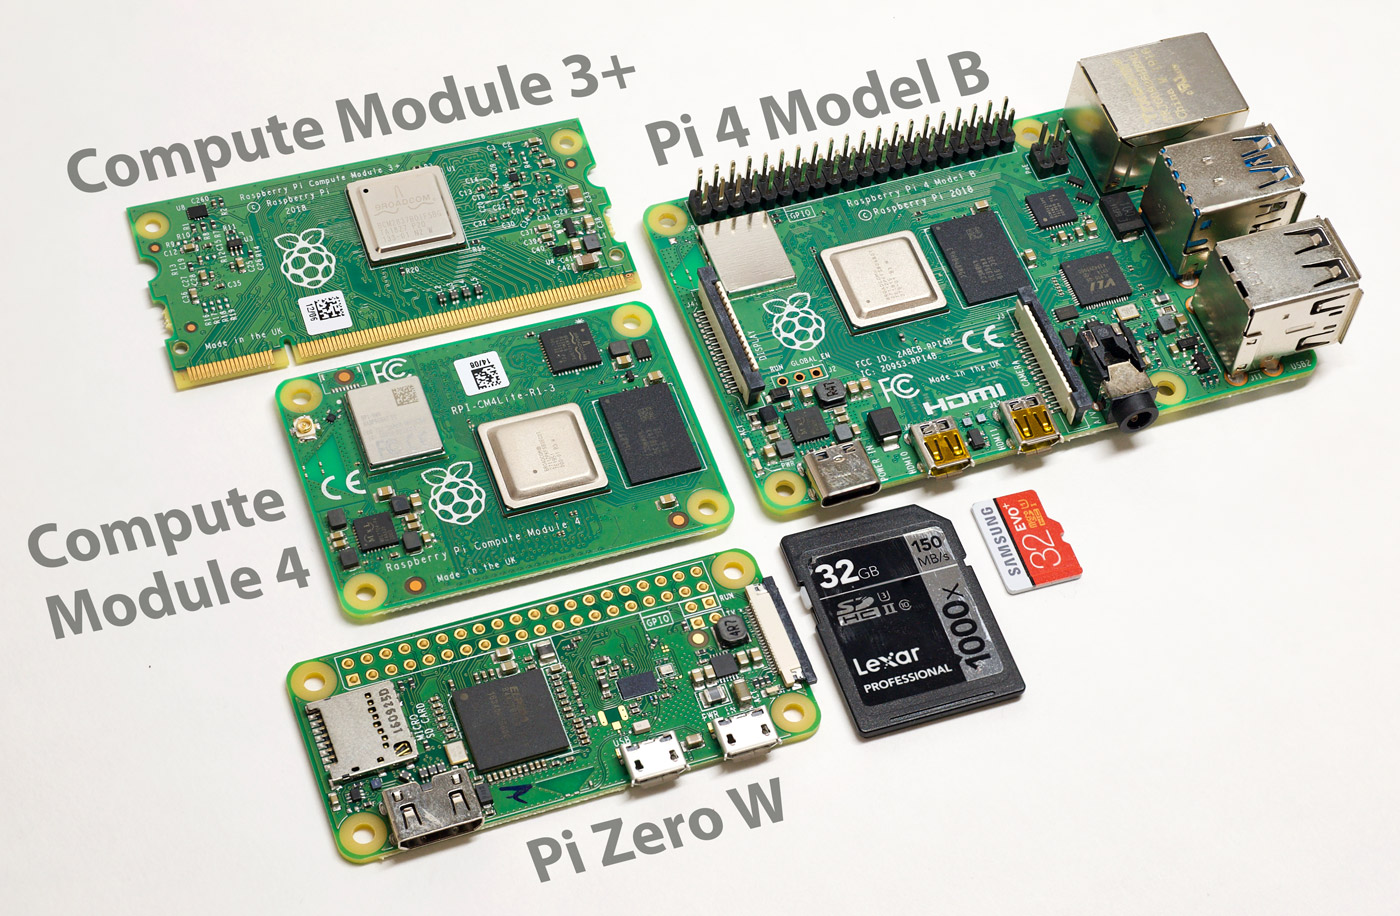 Raspberry Pi Compute Module 4 size comparison with Zero W, 4 model B, 3+, and microSD card